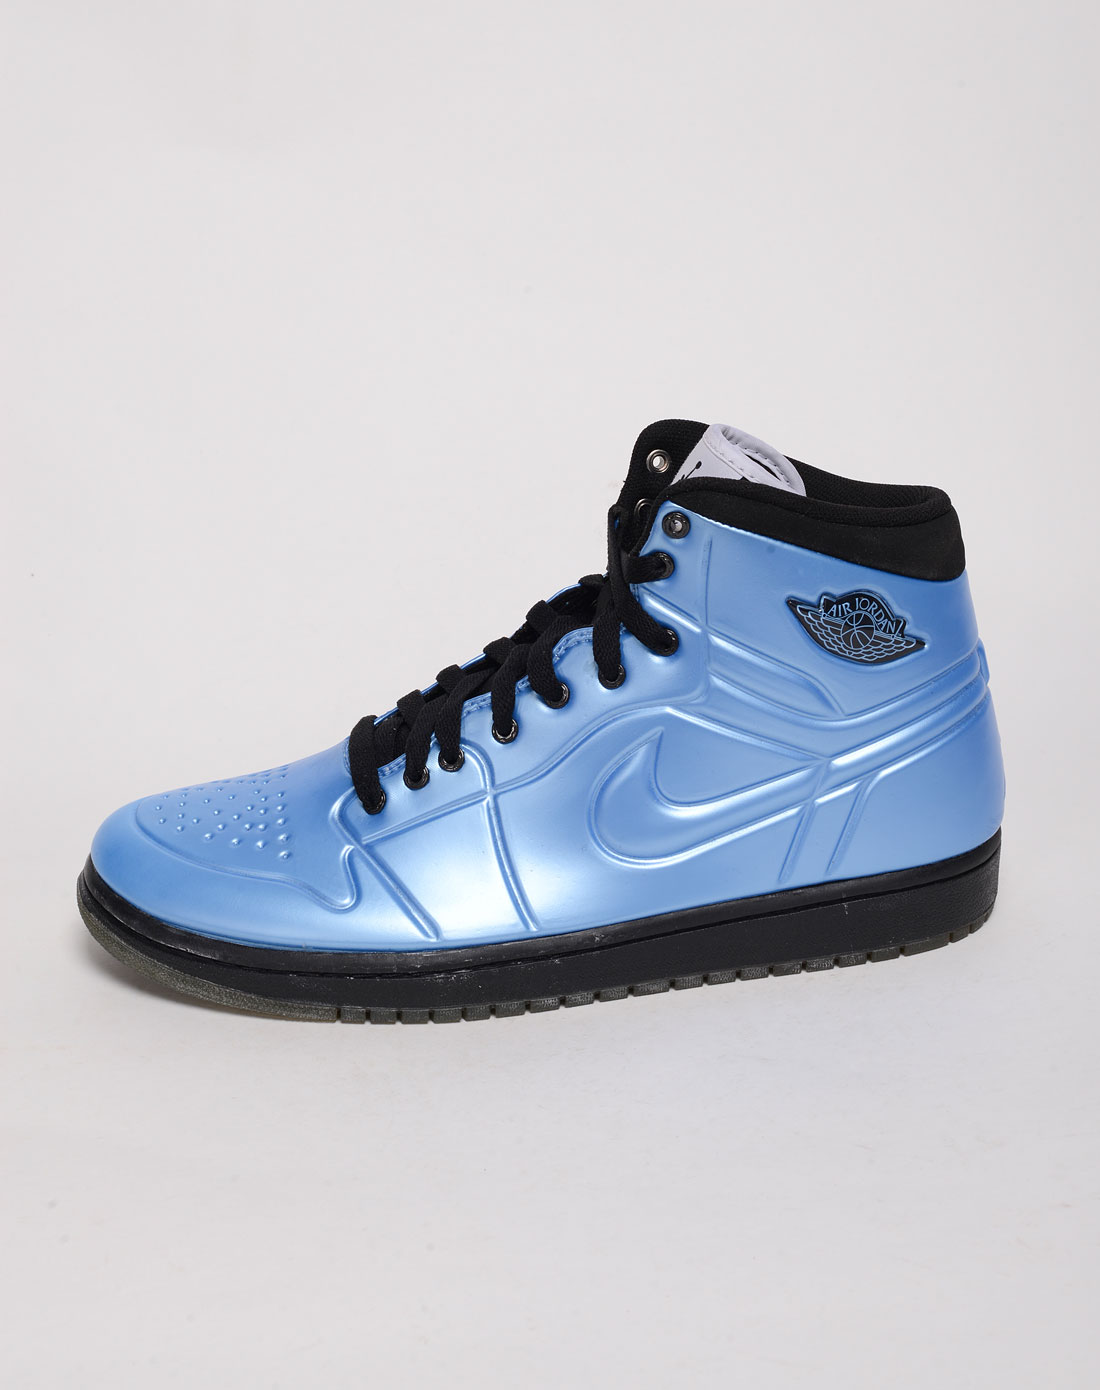 哪里能买到正版篮球鞋 耐克蓝色正版鞋多少钱合适?哪里有良心微商?